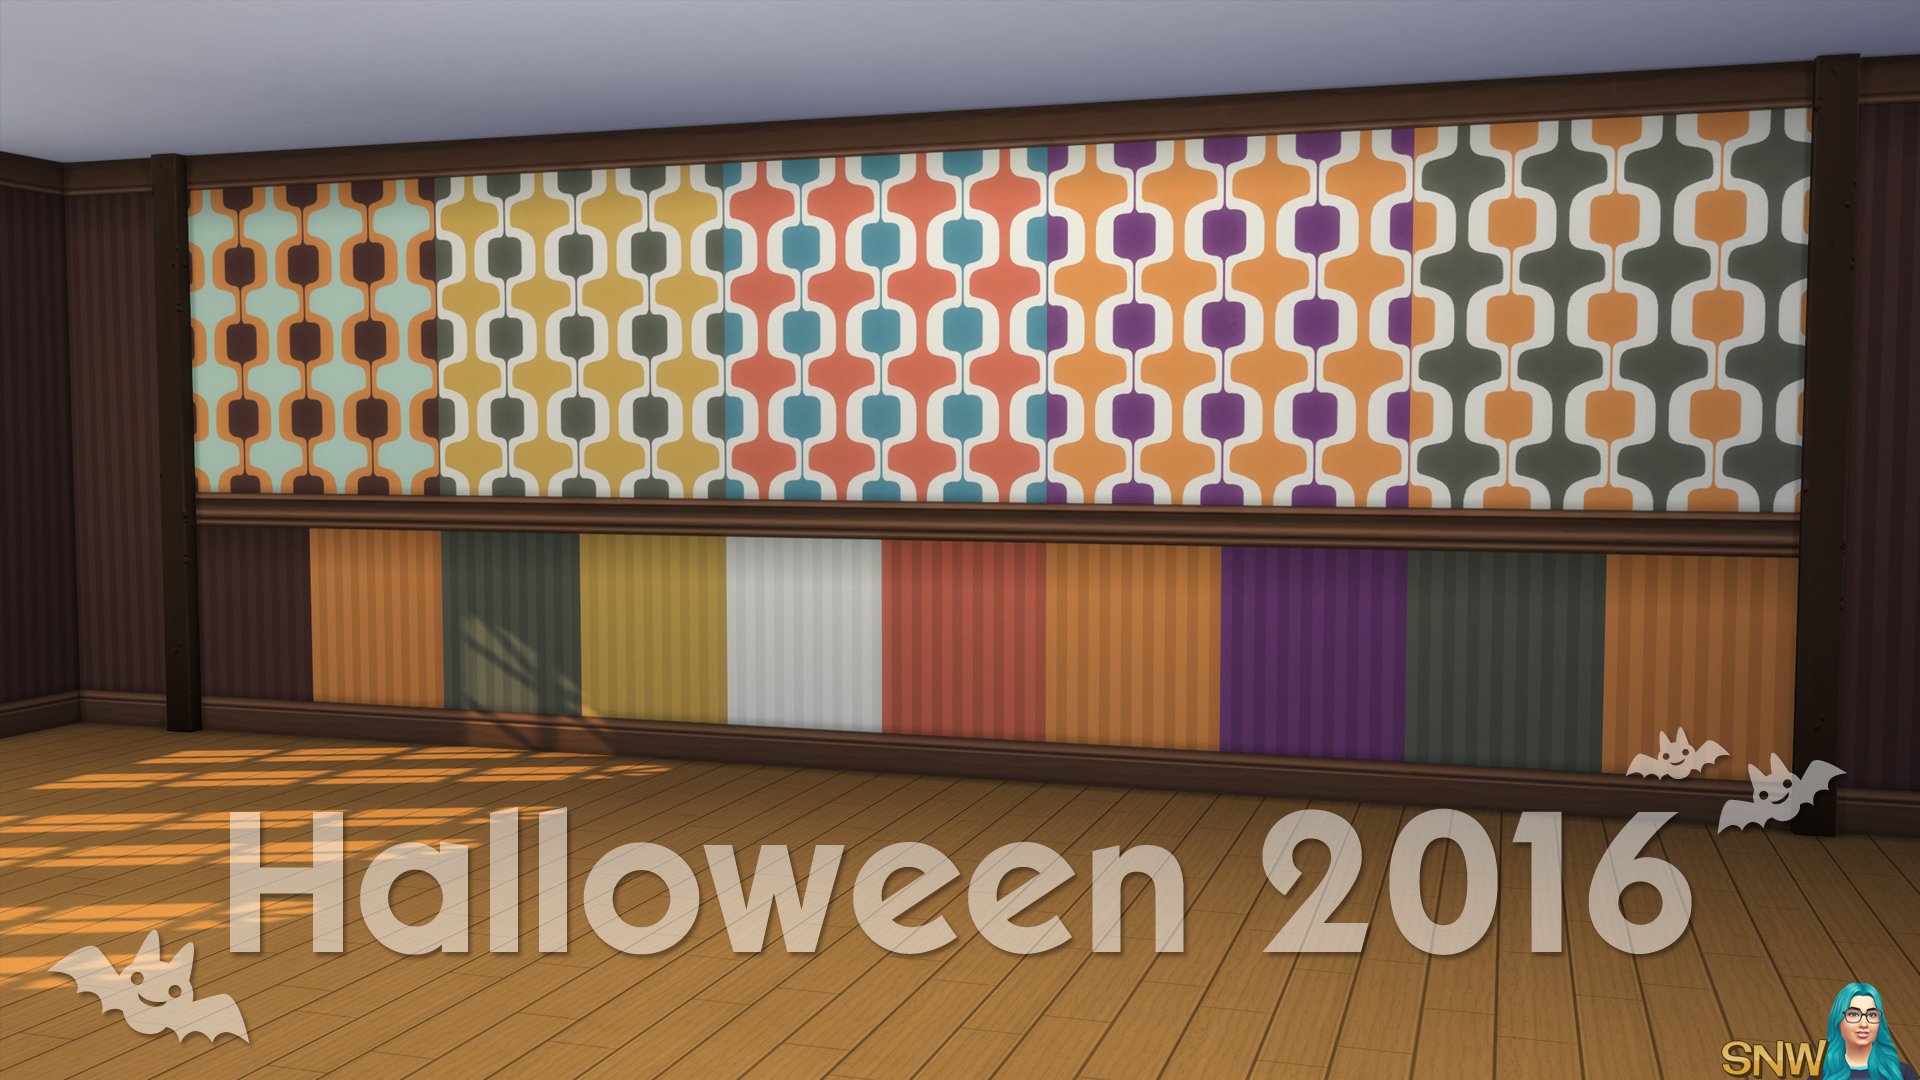 Halloween 2016 Walls #6